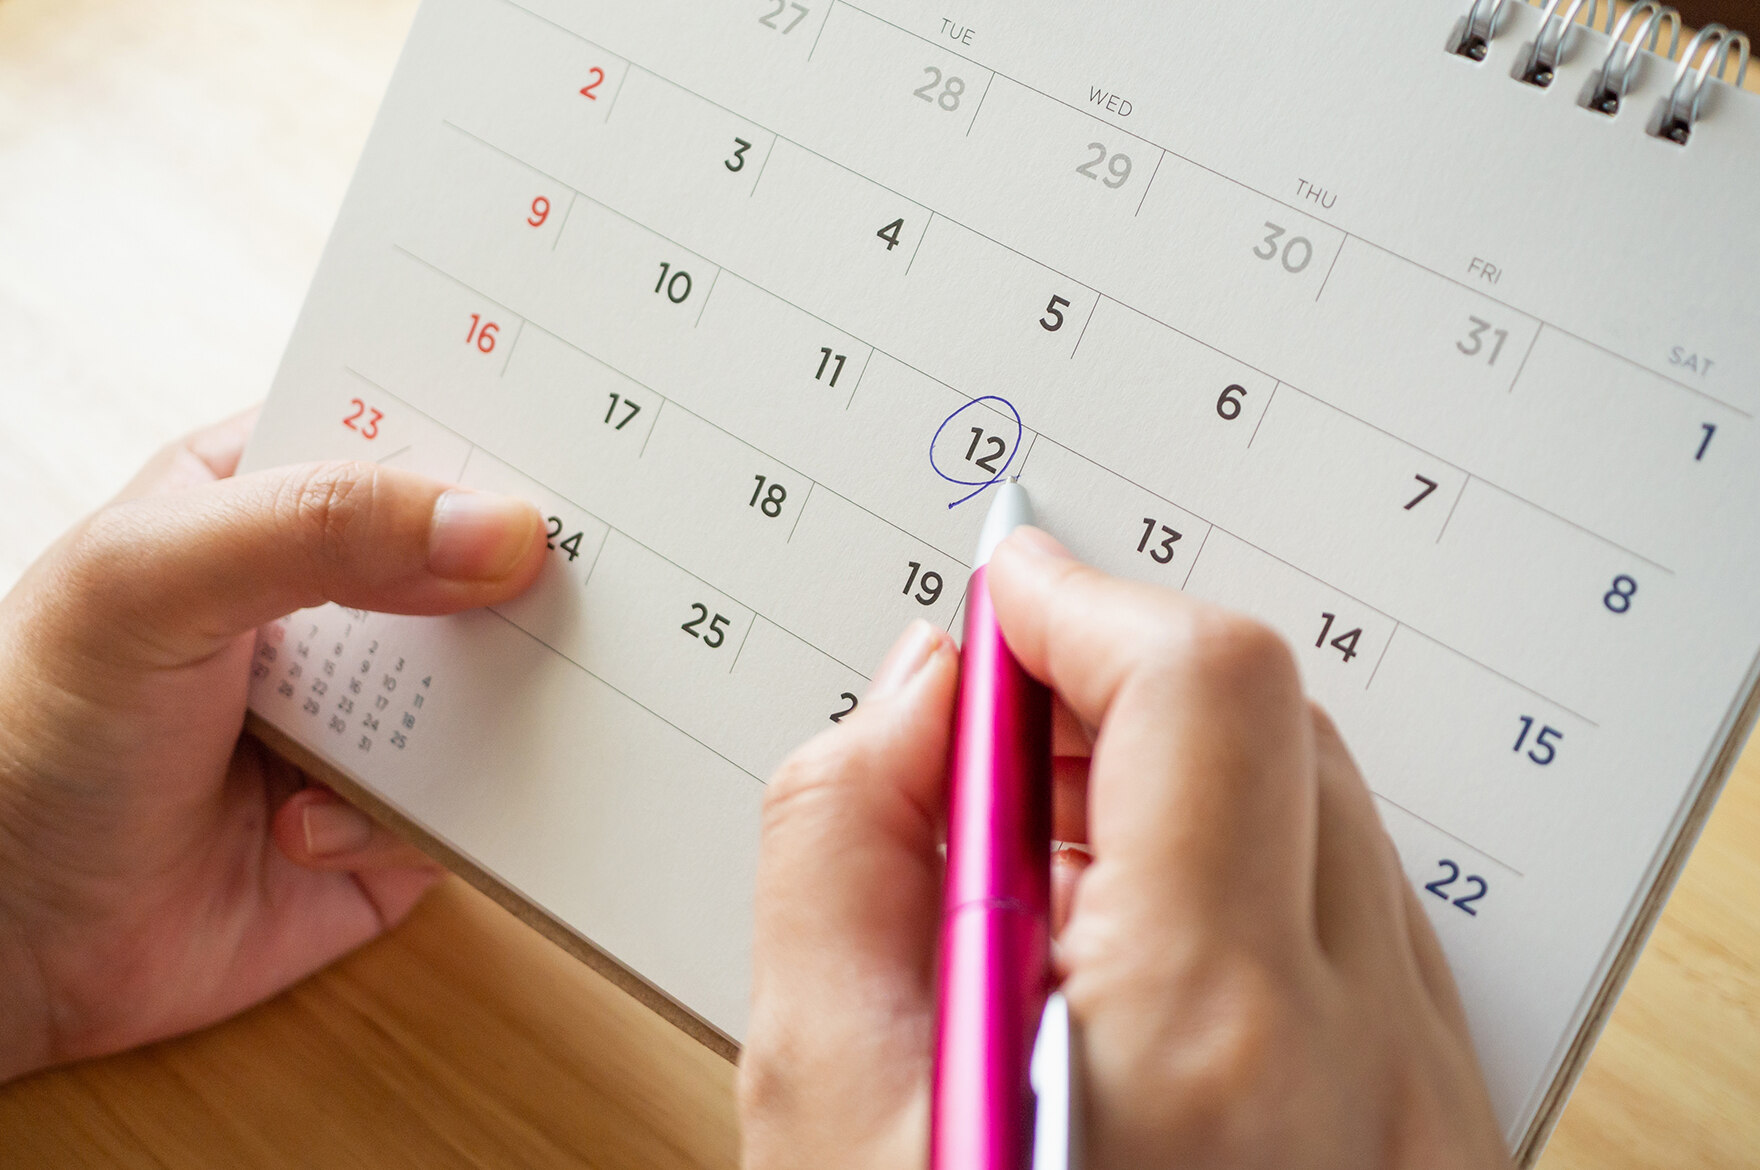 Hình ảnh tượng trưng cho các cuộc hẹn: Tờ lịch để bàn có lịch tay nữ cầm bút trước mặt